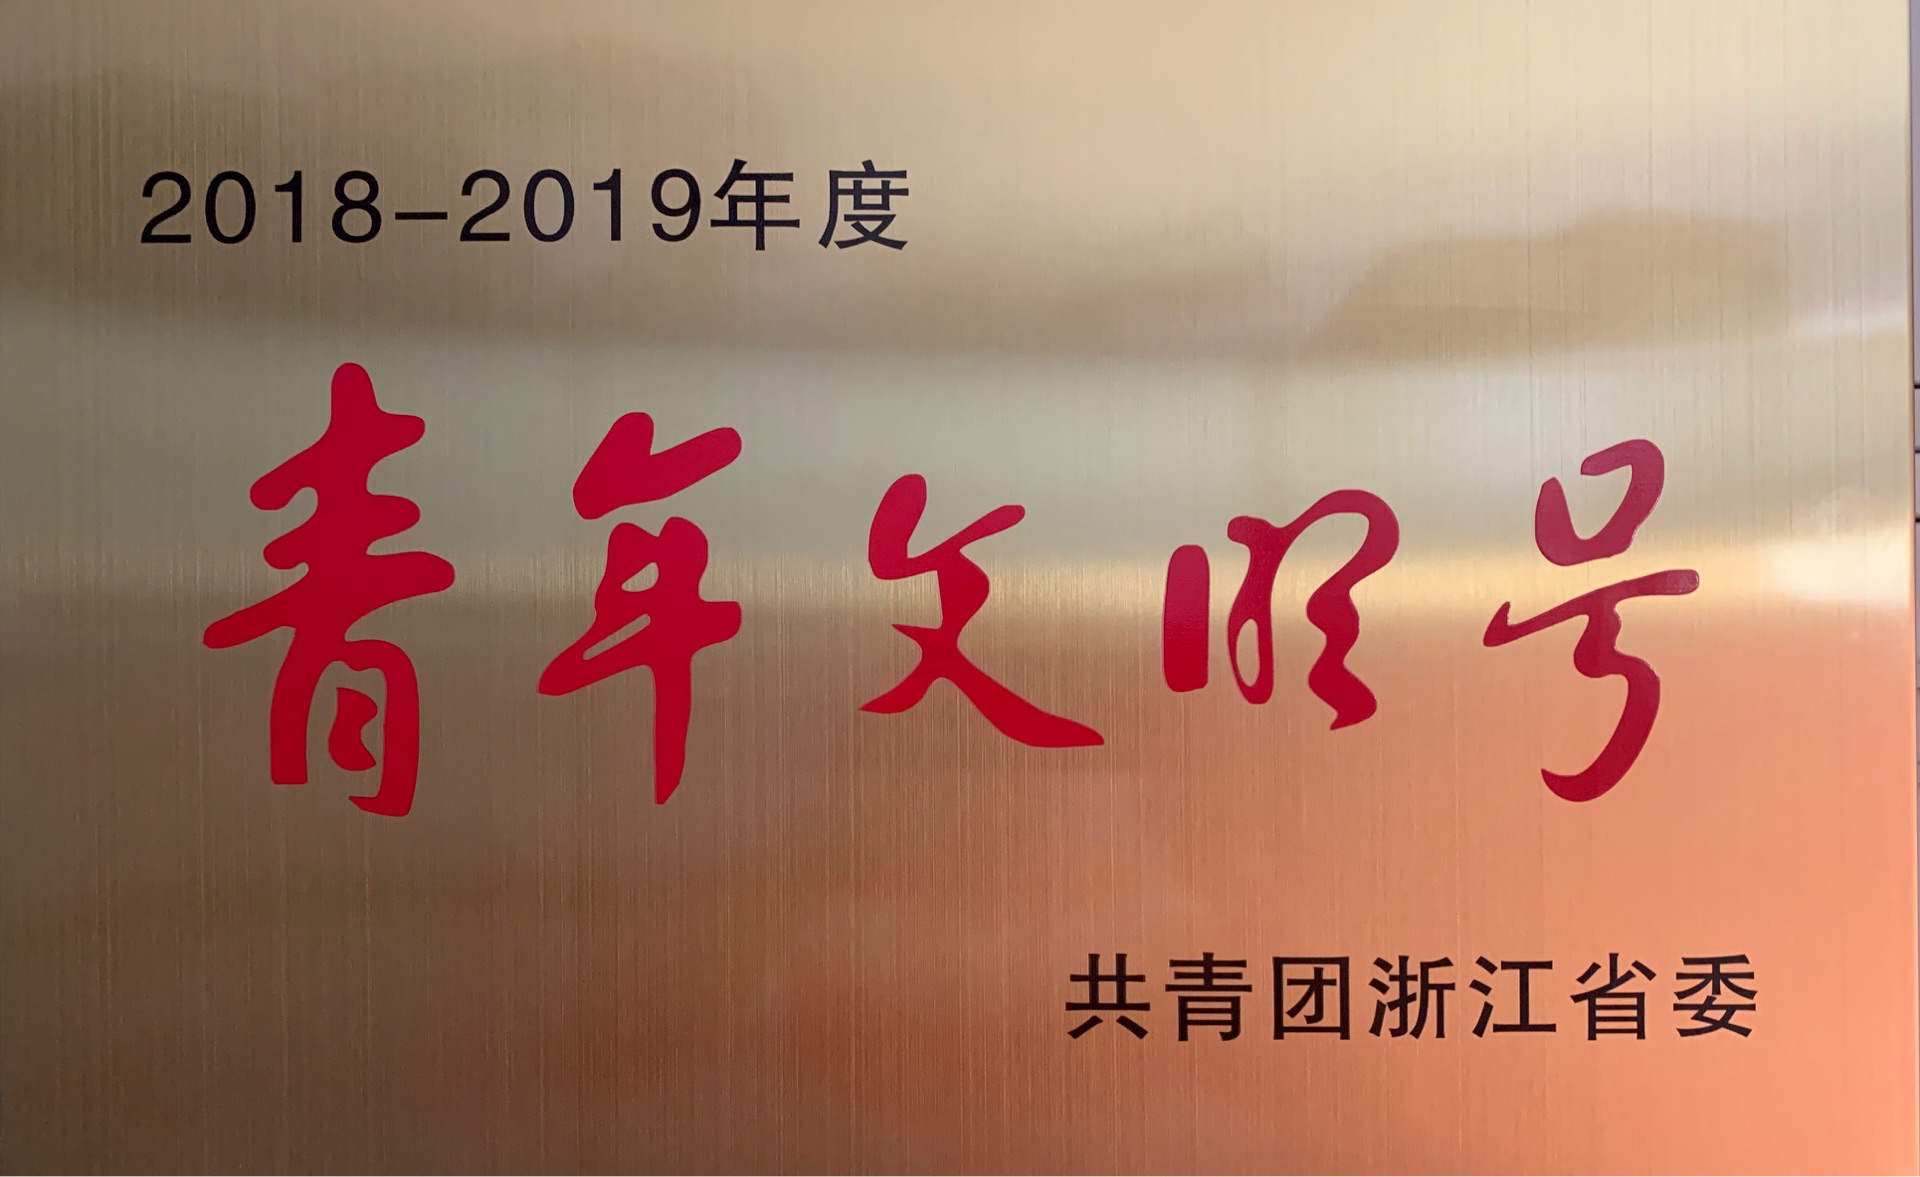 2018-2019年度，被共青团浙江省委授予“青年文明号”荣誉称号。.jpg